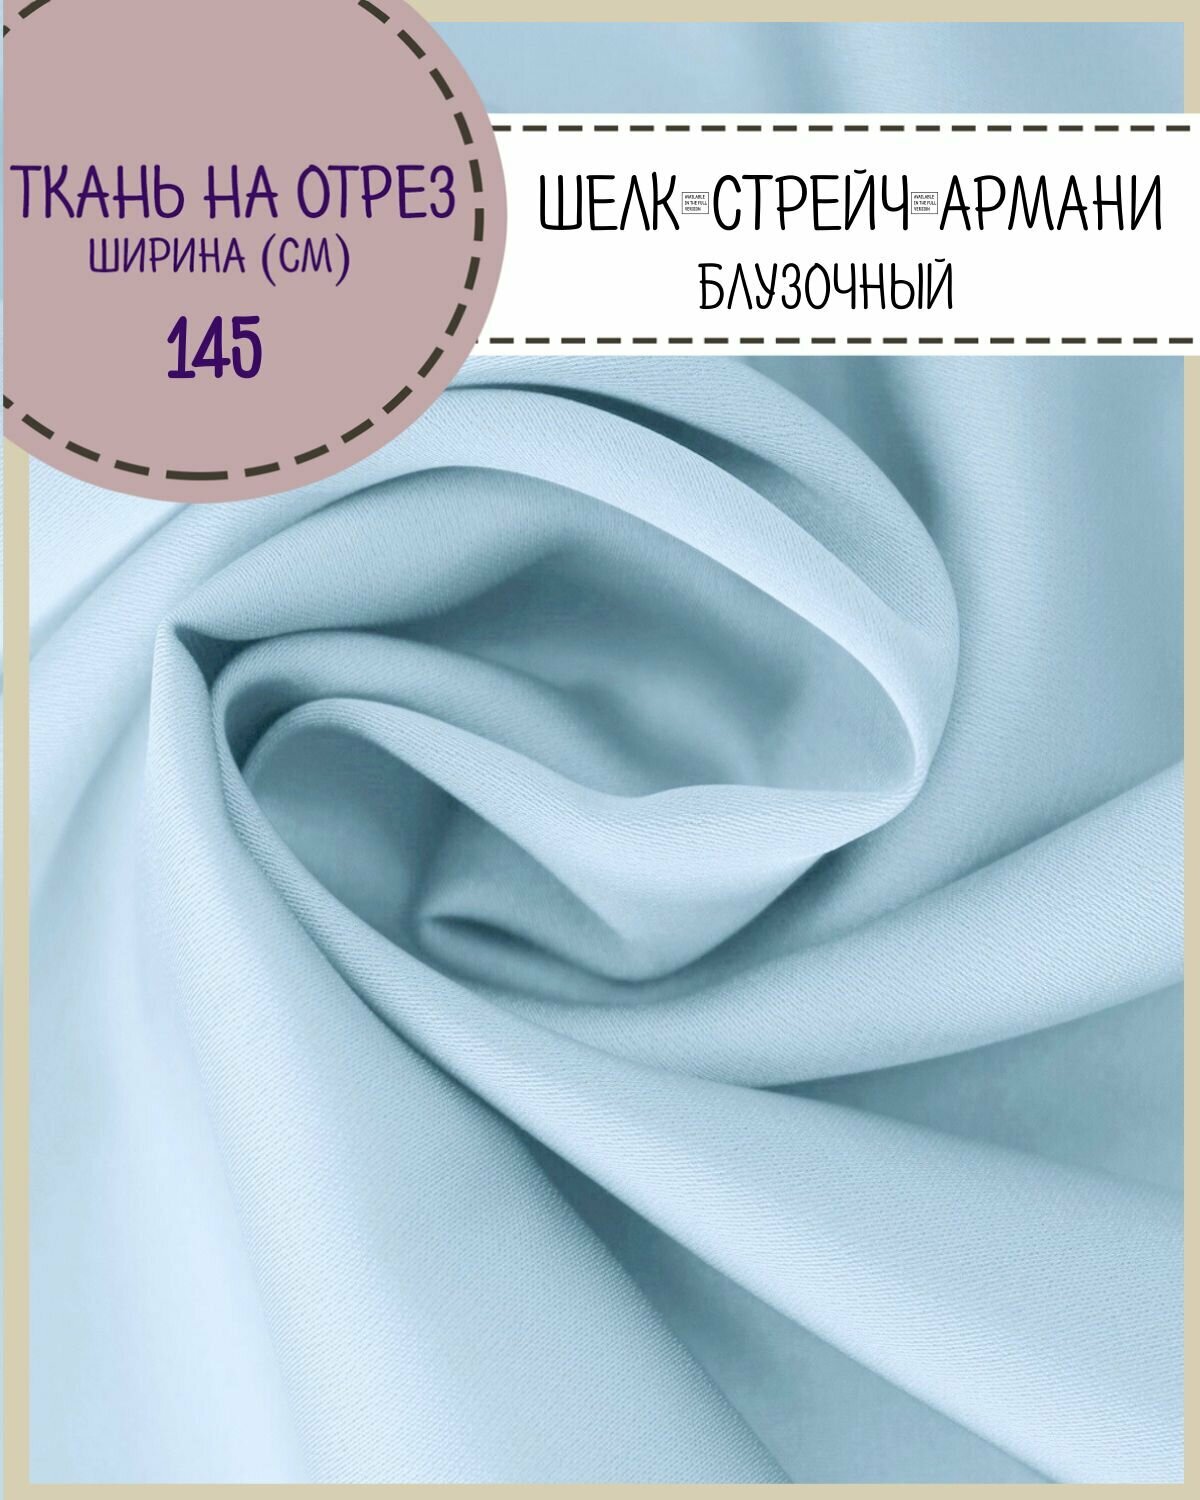 Ткань Шелк "Армани" стрейч/для платья/ блузы, цв. св. голубой, пл. 90 г/кв, ш-145 см, на отрез, цена за пог. метр